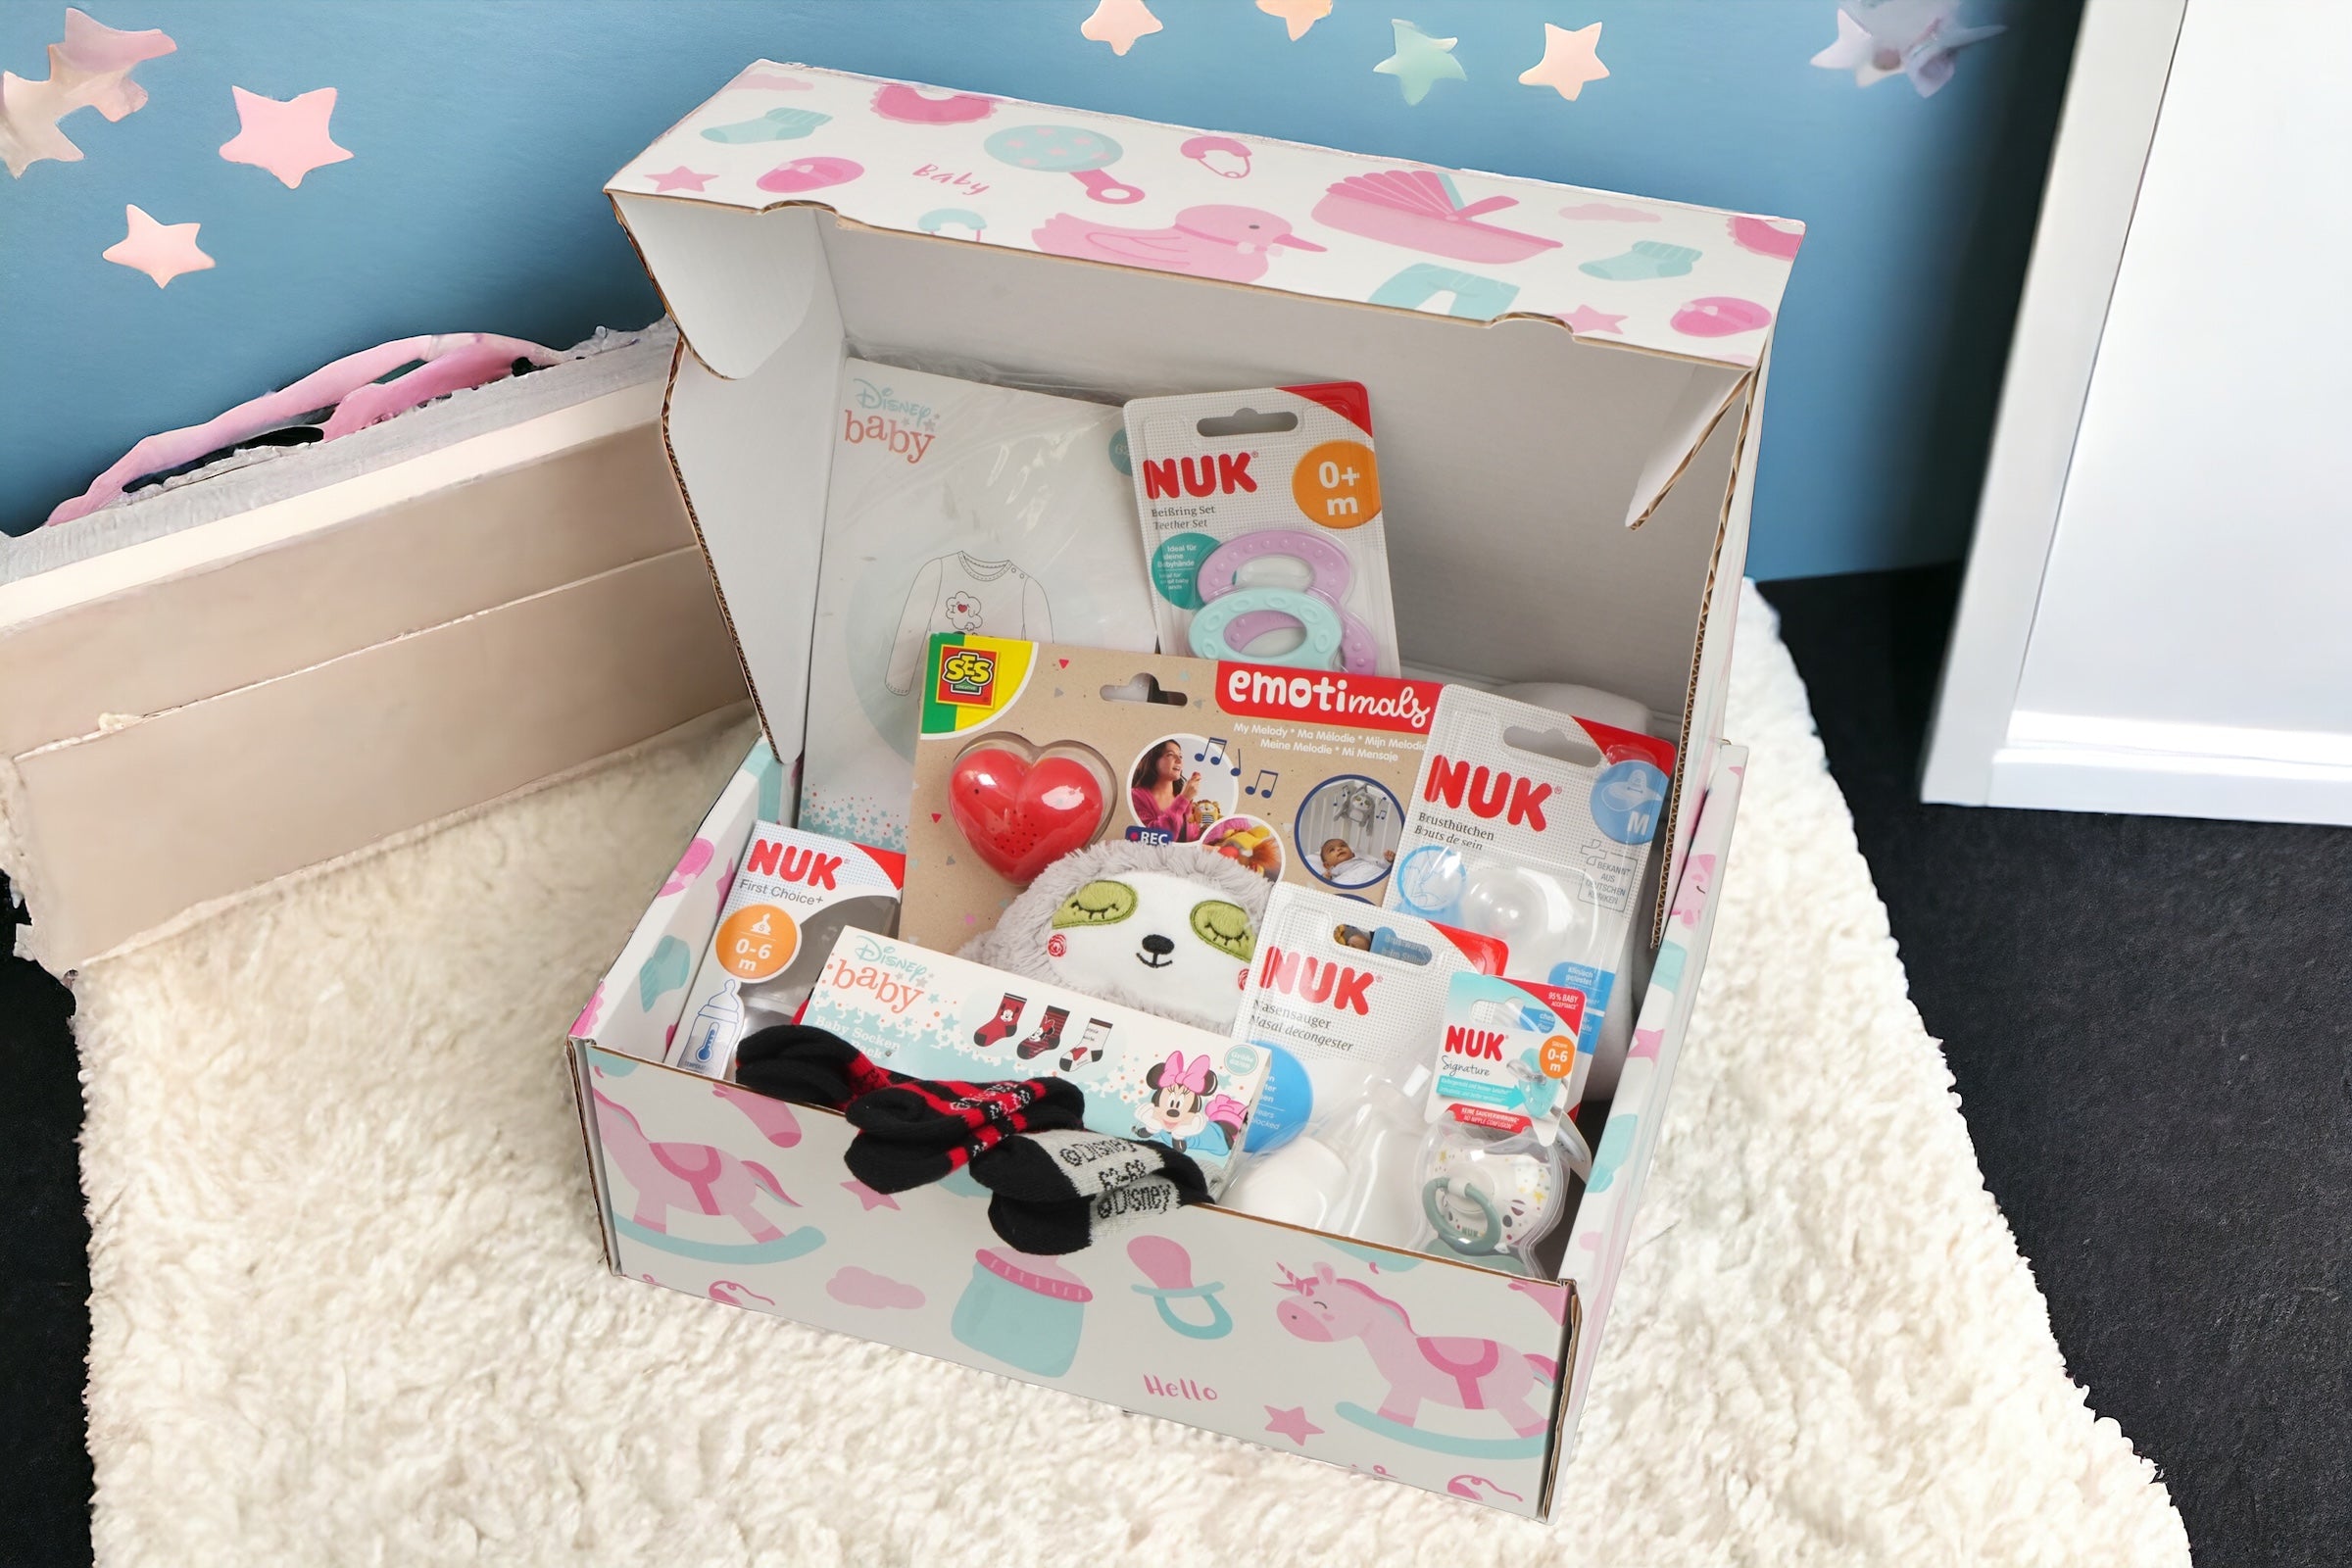 9-teilige Babybox für werdende Mütter Erstausstattung: Ein liebevoll zusammengestelltes Set aus neun unverzichtbaren Babyartikeln, um werdenden Müttern einen guten Start ins Elternsein zu ermöglichen. Enthält alles von Kleidung über Pflegeprodukte bis hin zu kleinen Spielzeugen.